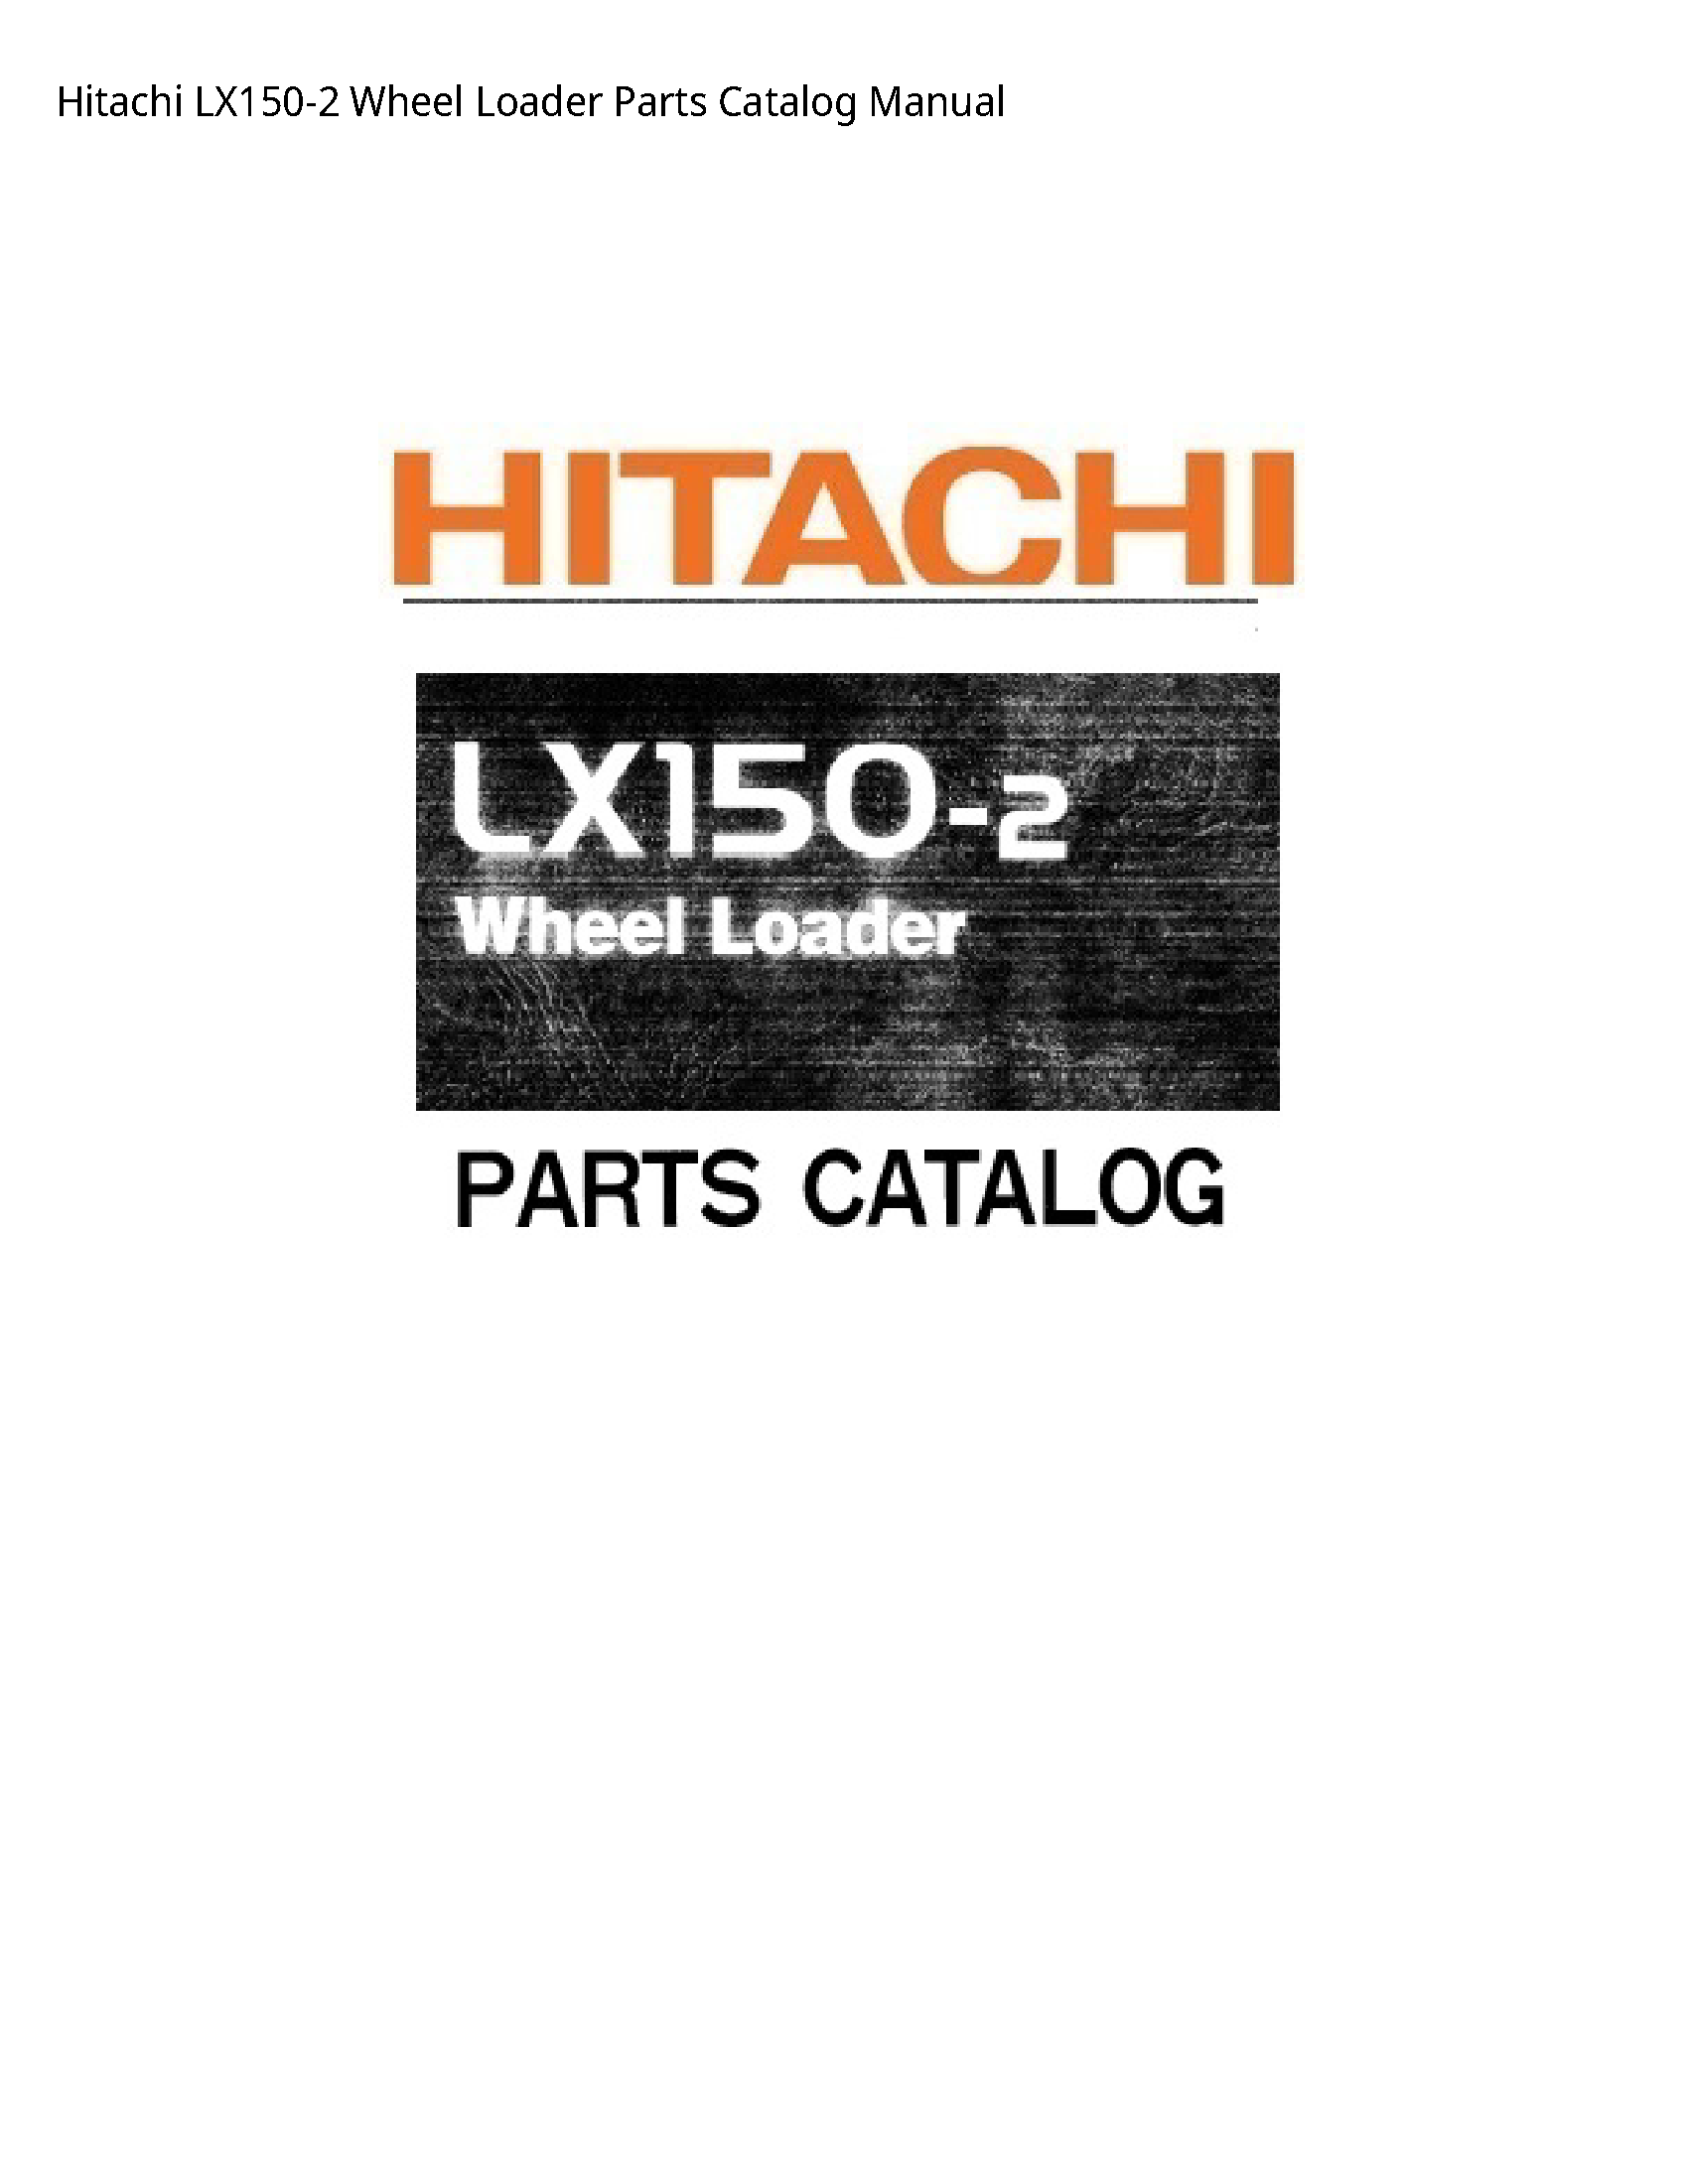 Hitachi LX150-2 Wheel Loader Parts Catalog manual